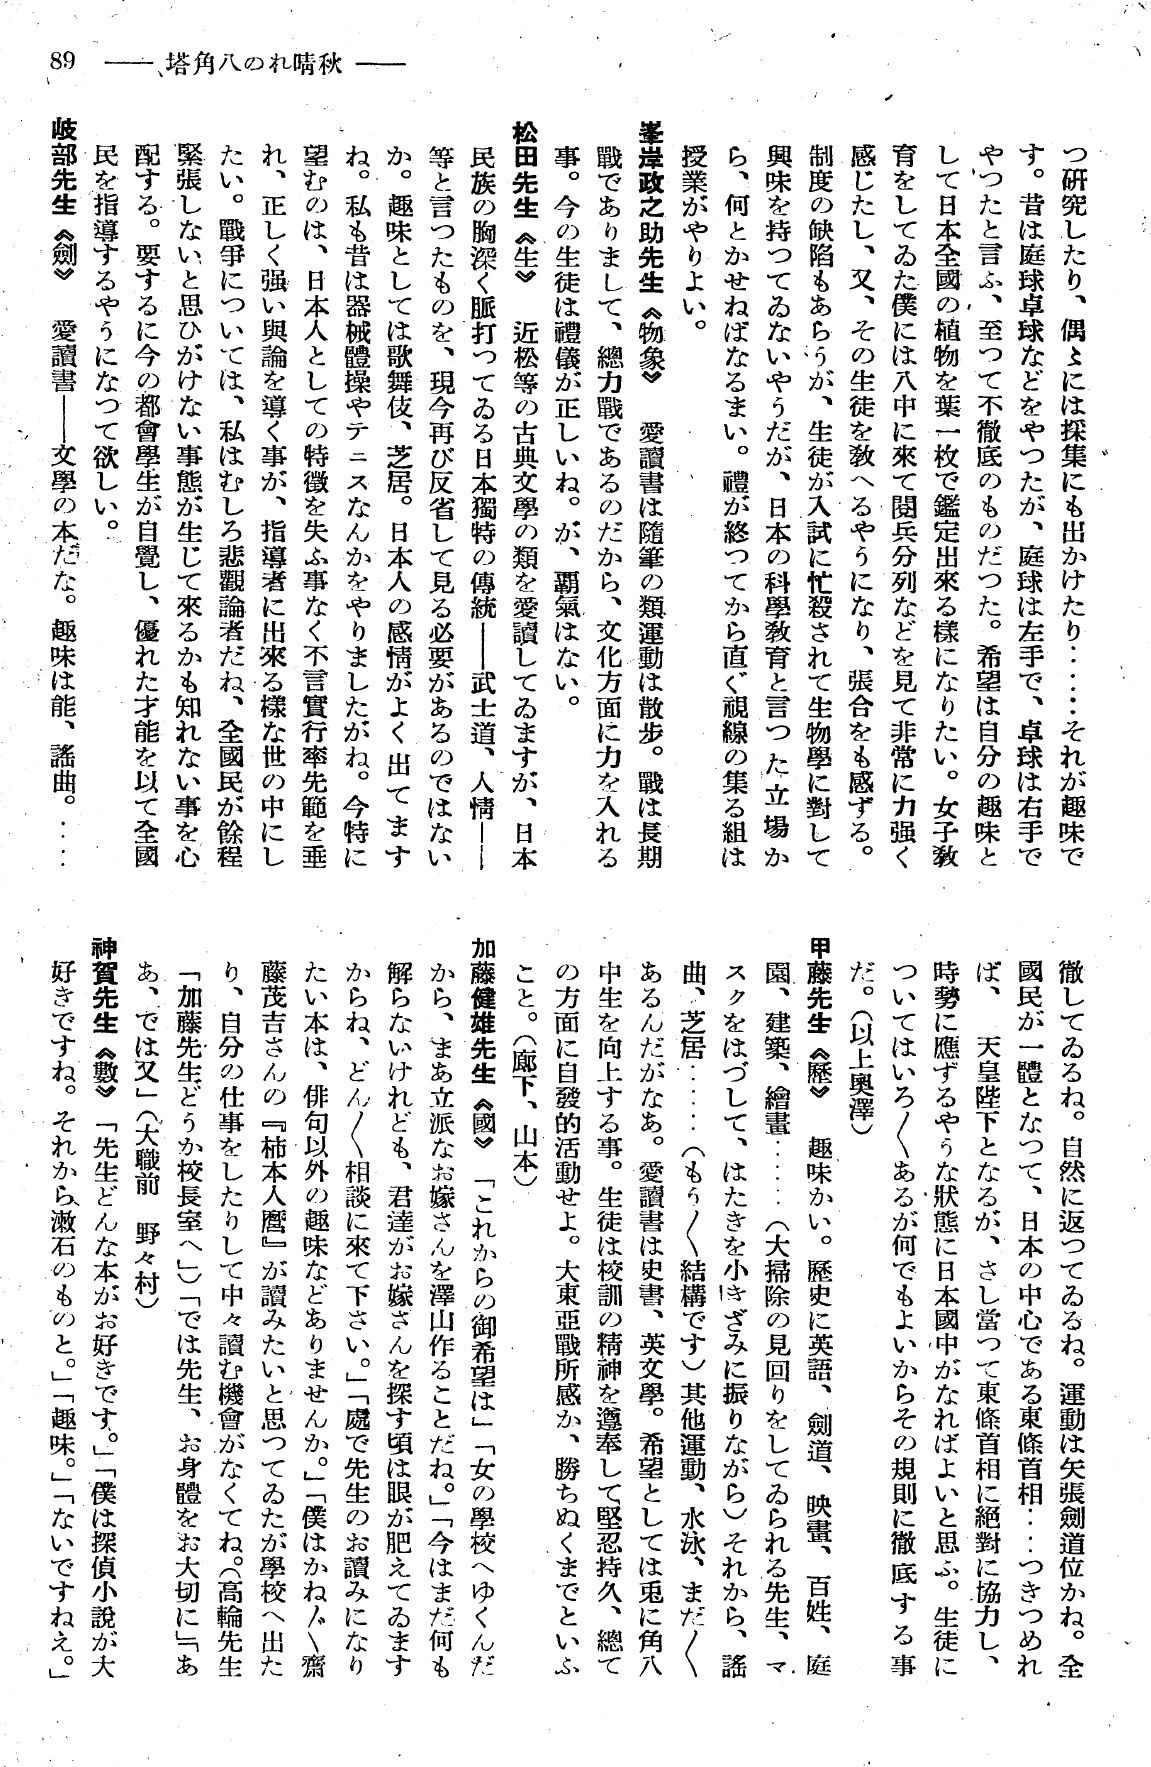 報國団雑誌 第19号 154 教師ぶら下がり取材 秋晴れの八角塔04.jpg